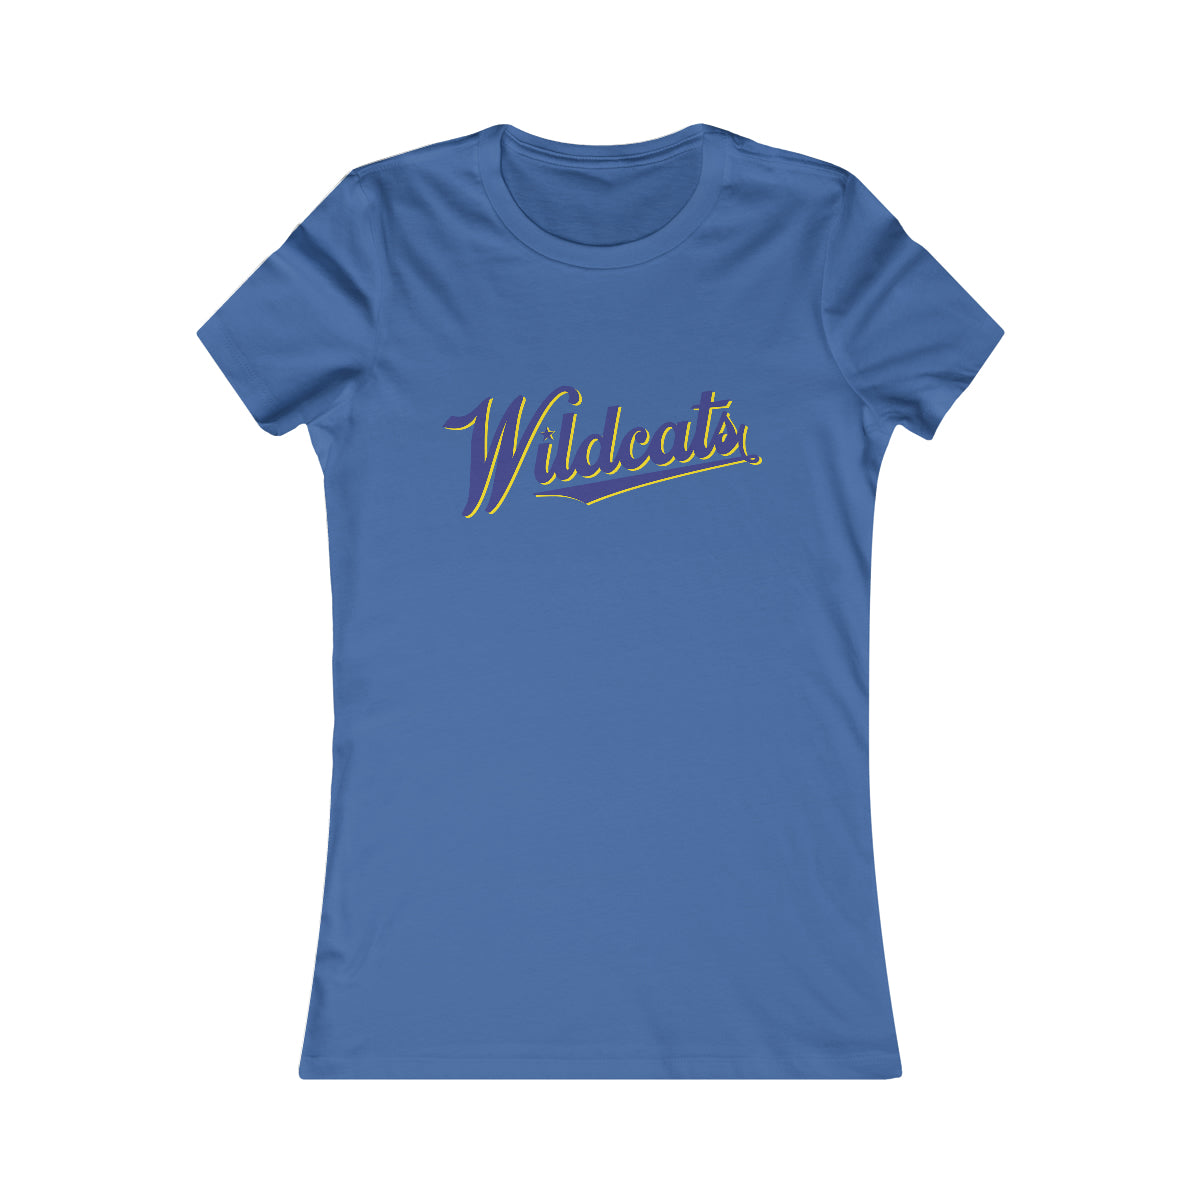 Wildcats star Women's Favorite Tee